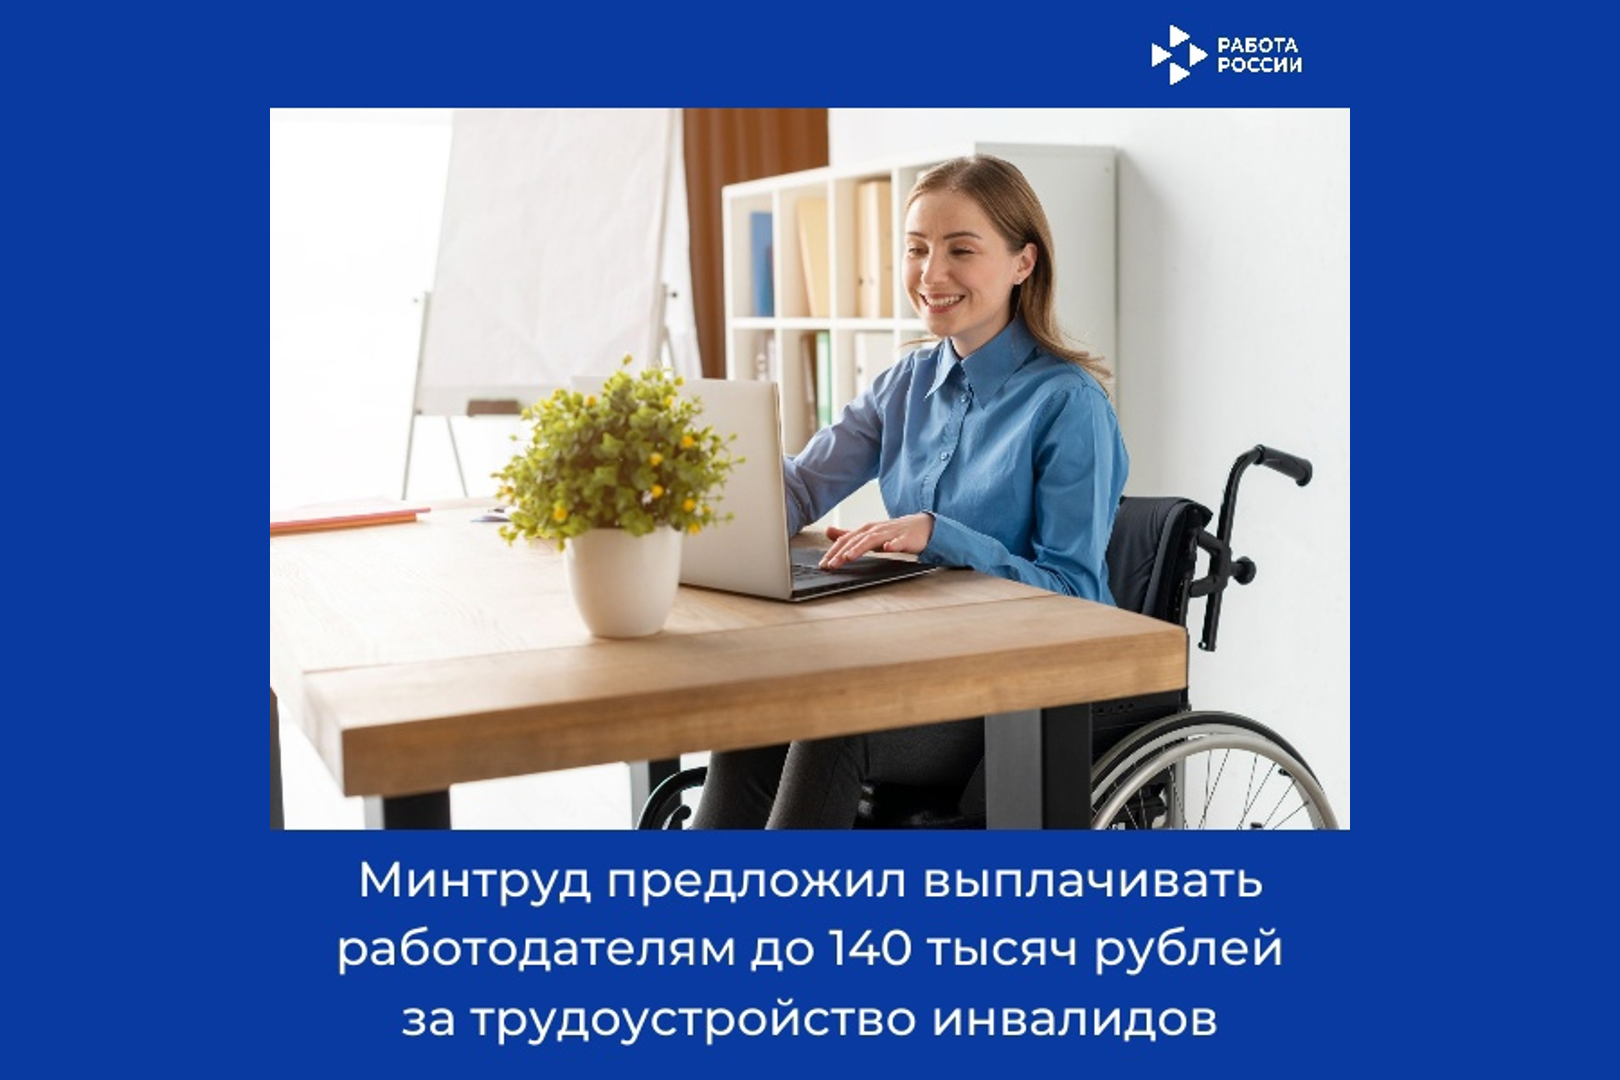 Минтруд предложил выплачивать работодателям до 140 тысяч рублей за трудоустройство инвалидов